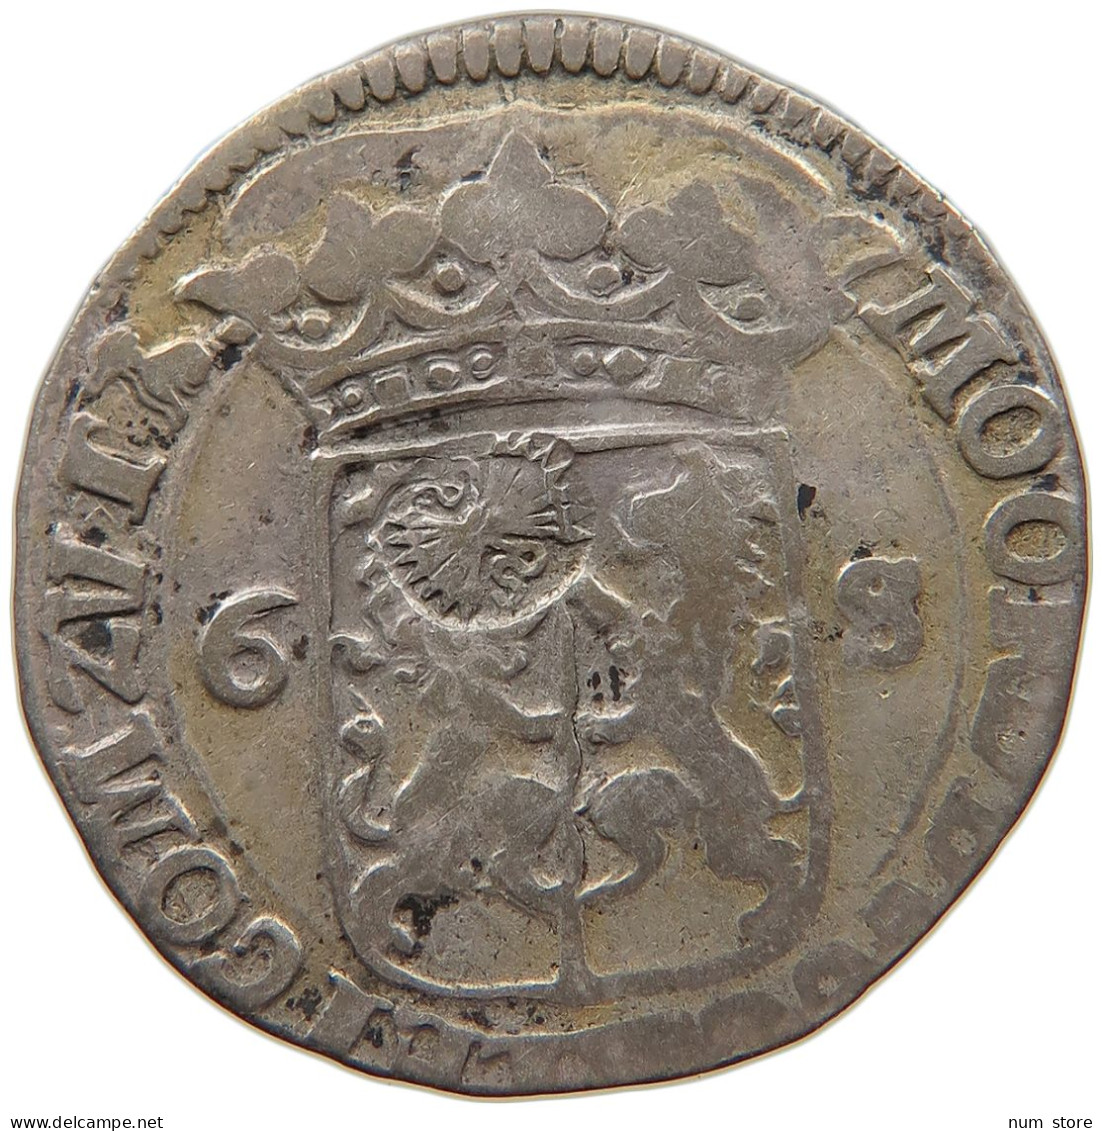 NETHERLANDS GELDERLAND 6 STUIVERS 1681 BUNDLE OF ARROWS #MA 063798 - Provincial Coinage